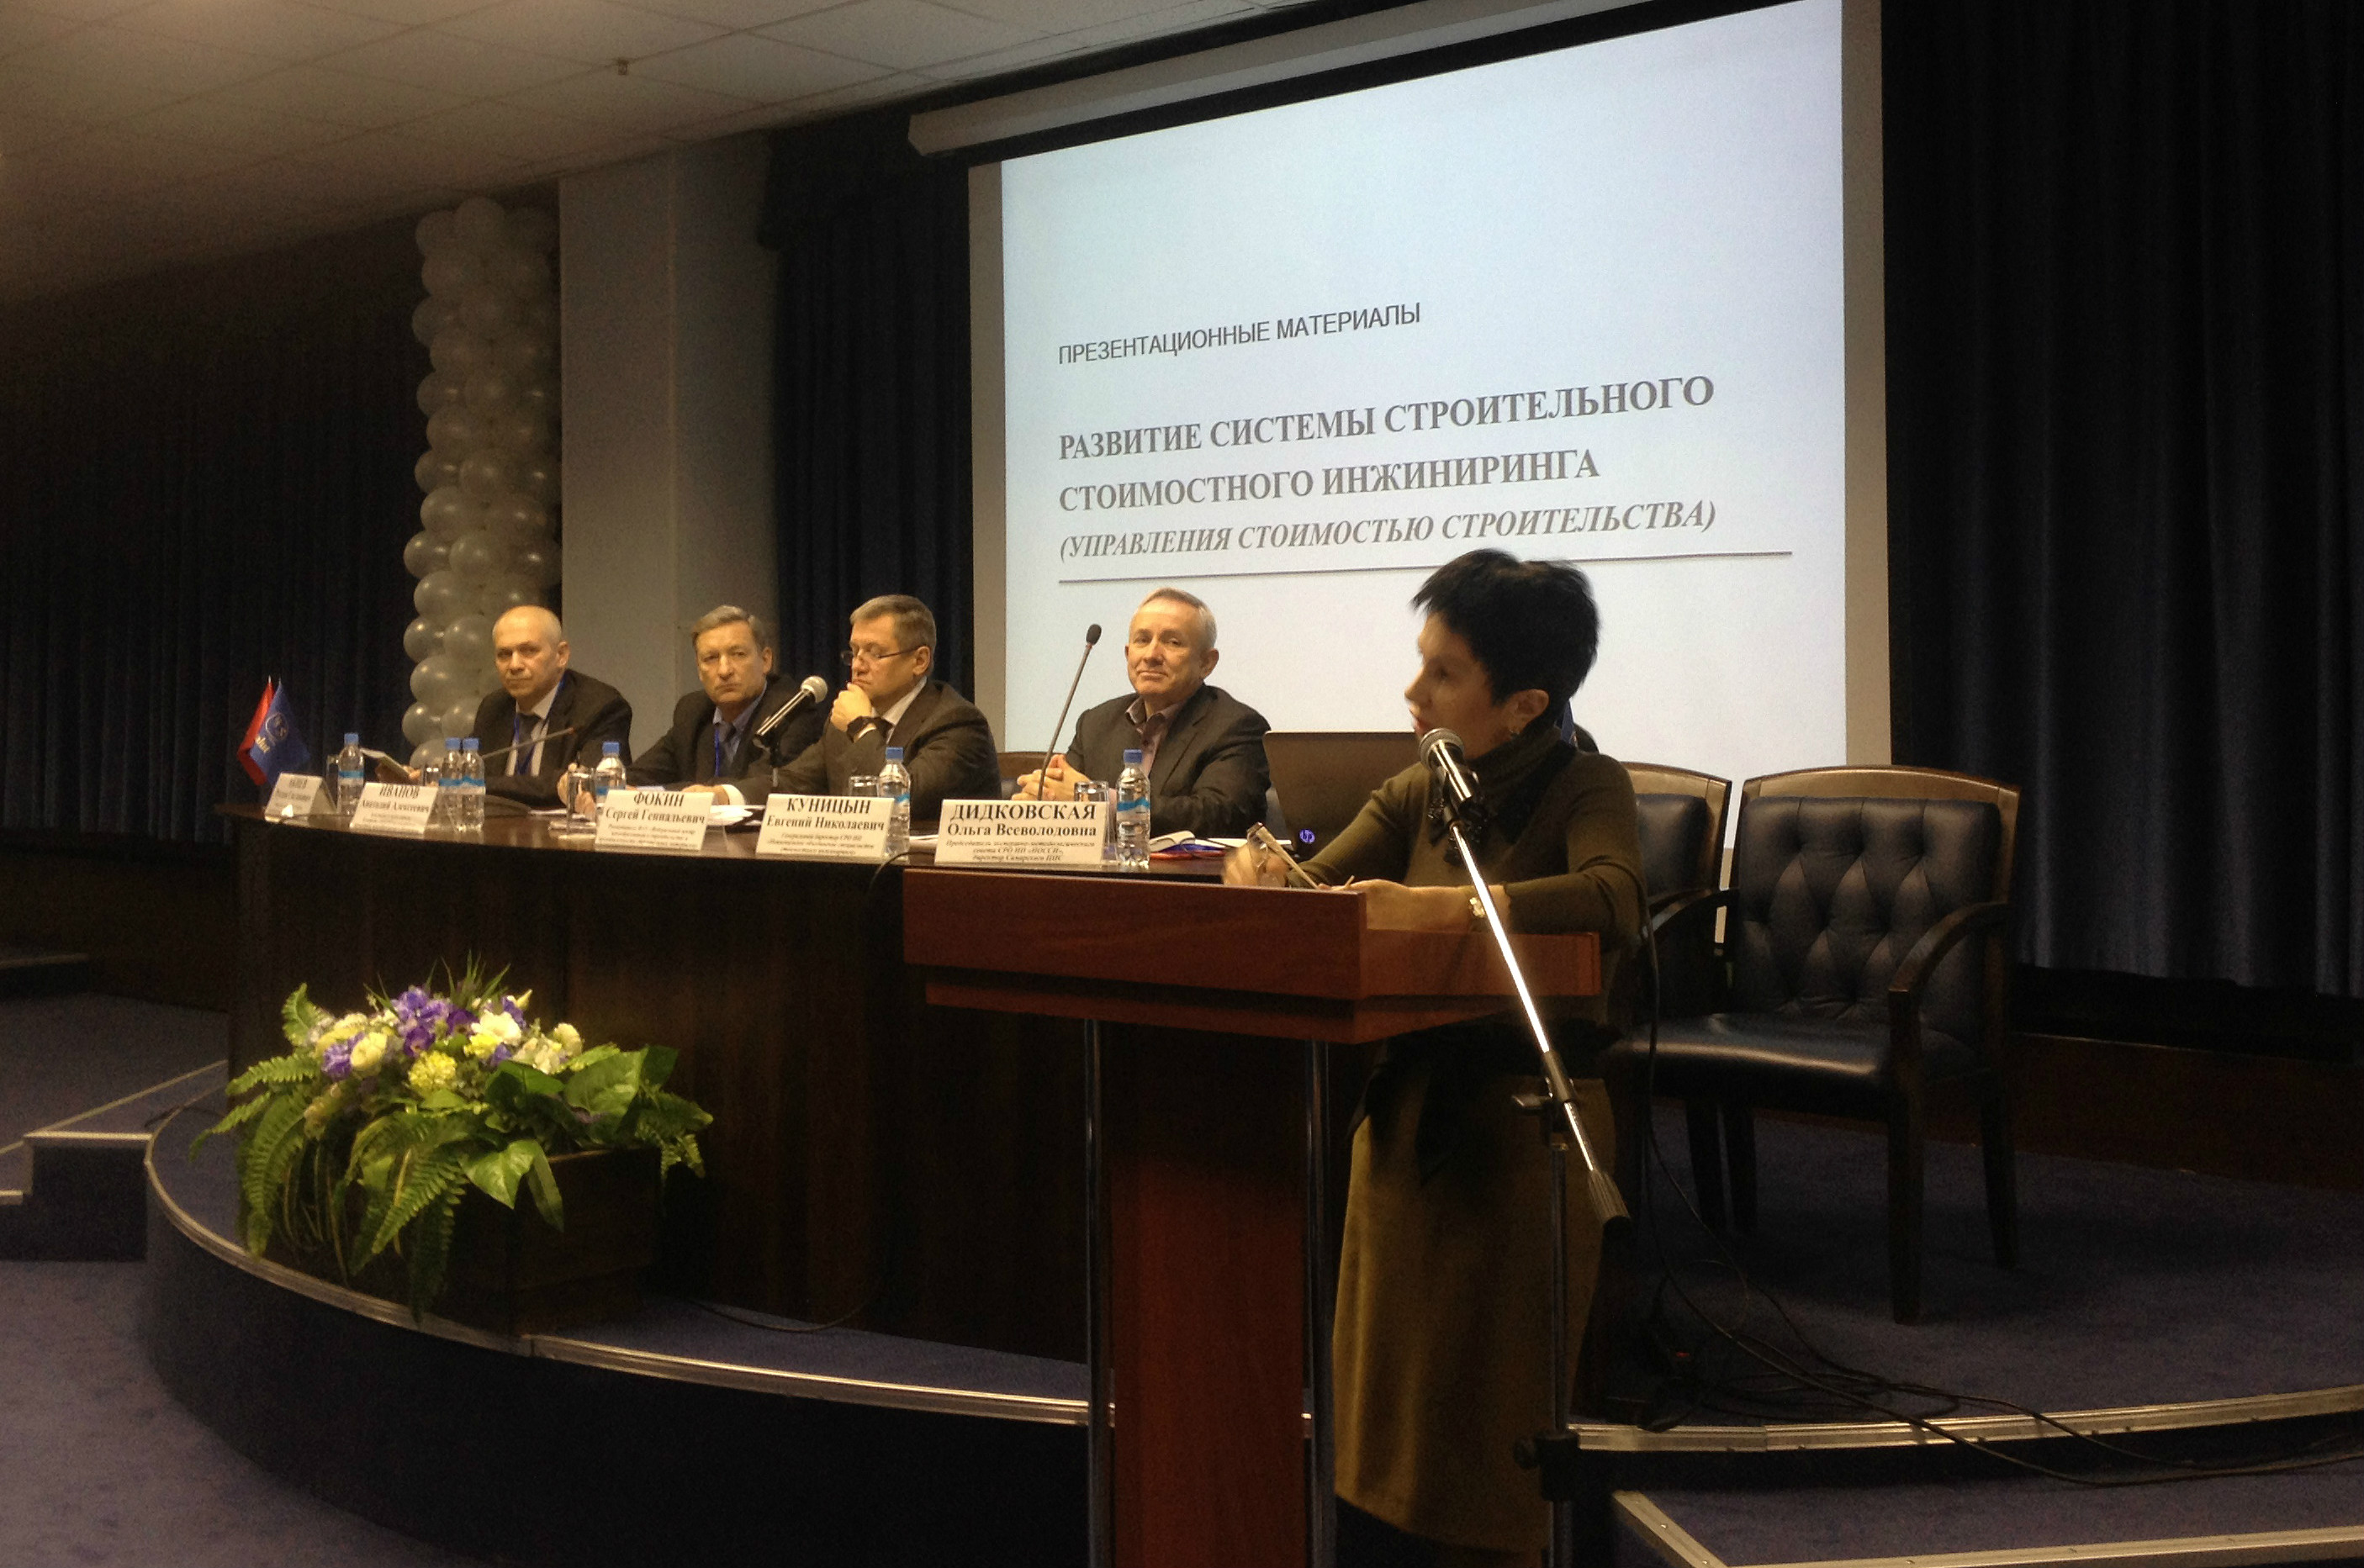 Проблемы и перспективы развития системы управления стоимостью строительства обсудили на Конференции в Москве